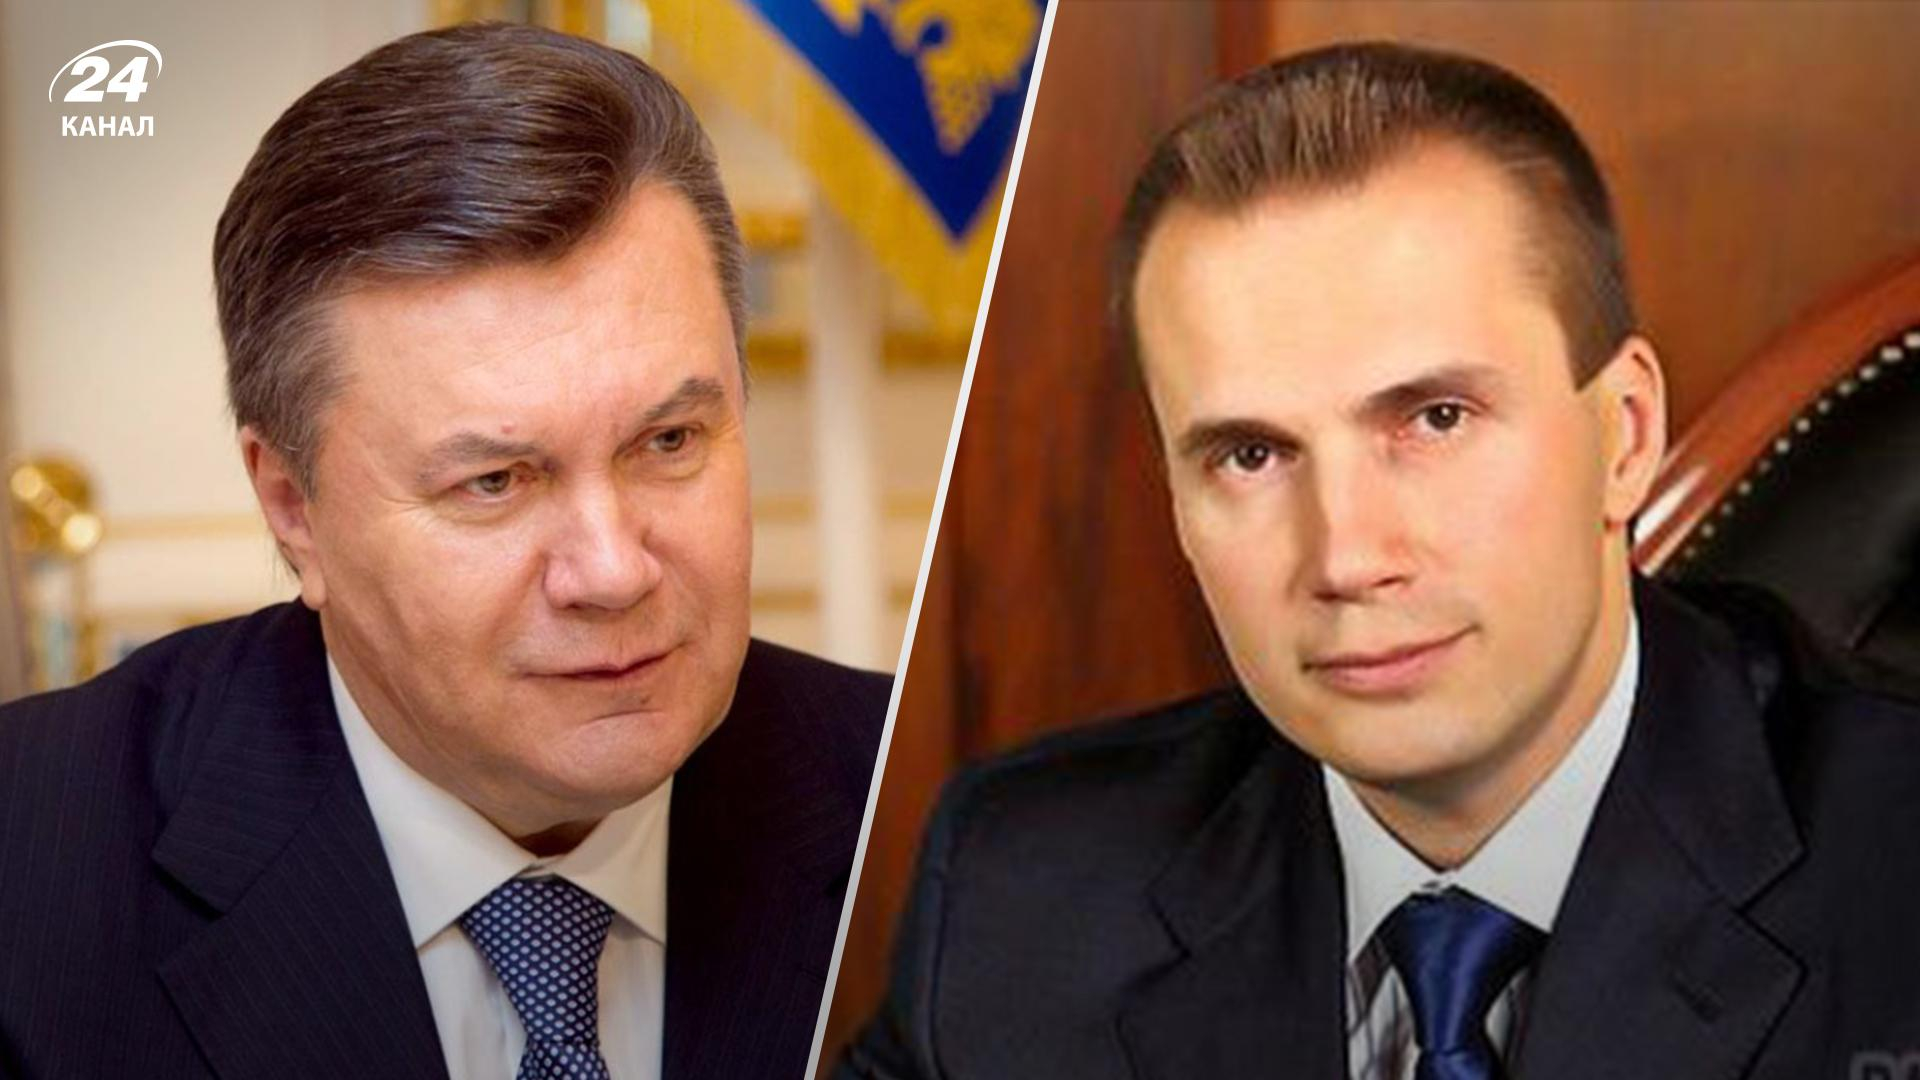 ЄС вів нові санкції проти Вітора та Олександра Януковичів